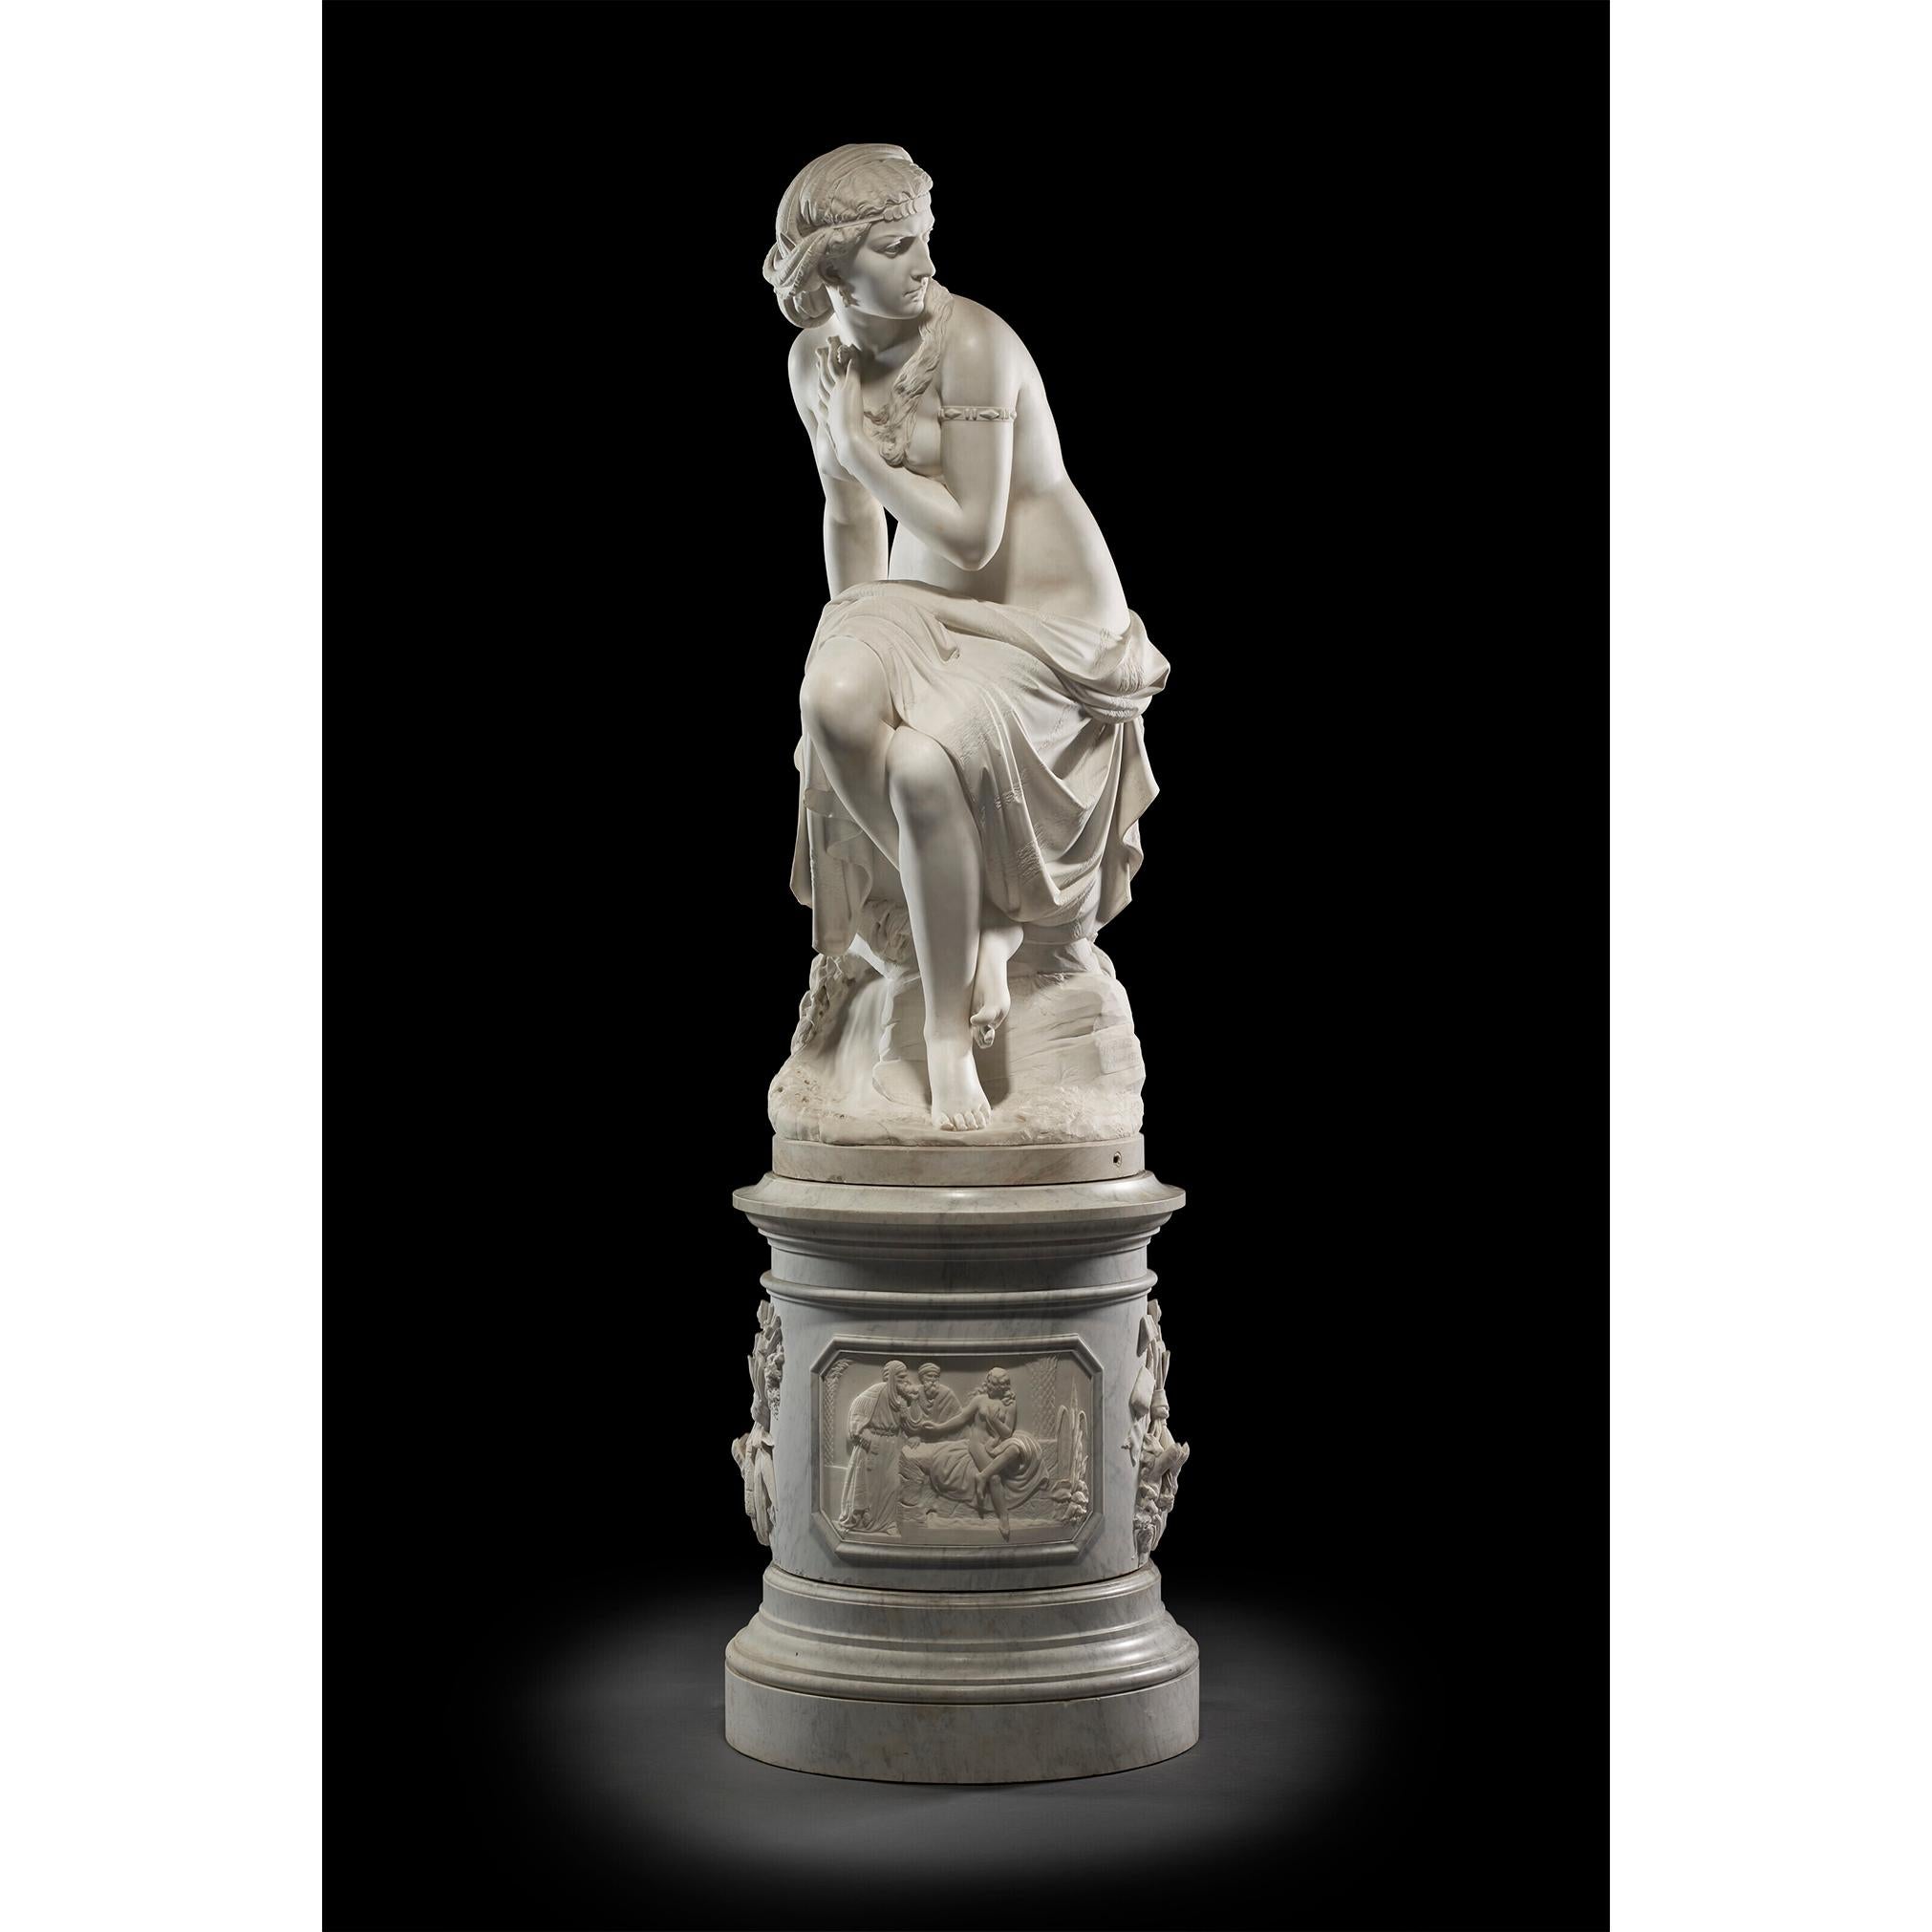 Giovan Domenico Lombardi Omino Figurative Sculpture - Susanna al bagno Italian Marble Statue by Lombardi with relief sculpture Base 